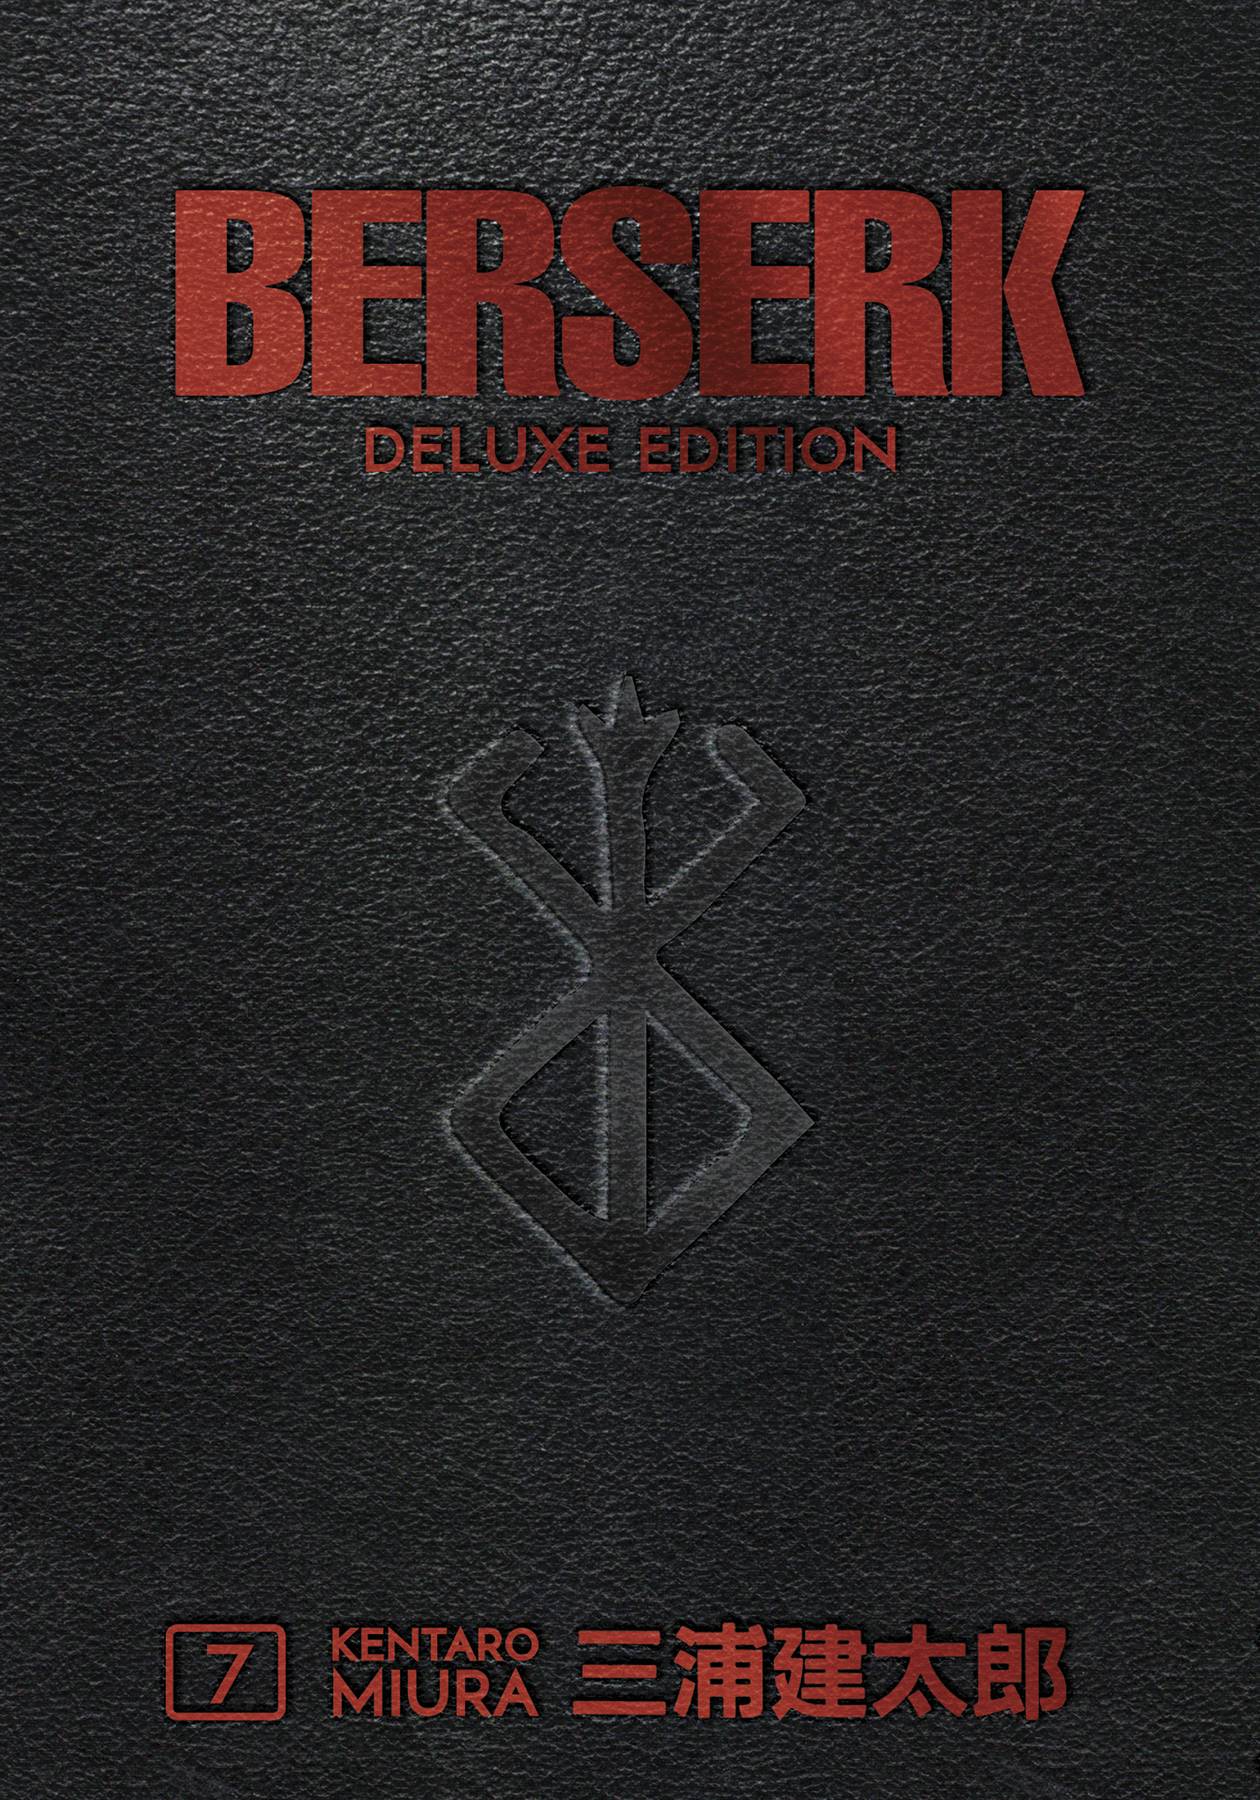 BERSERK DELUXE EDITION HC 07